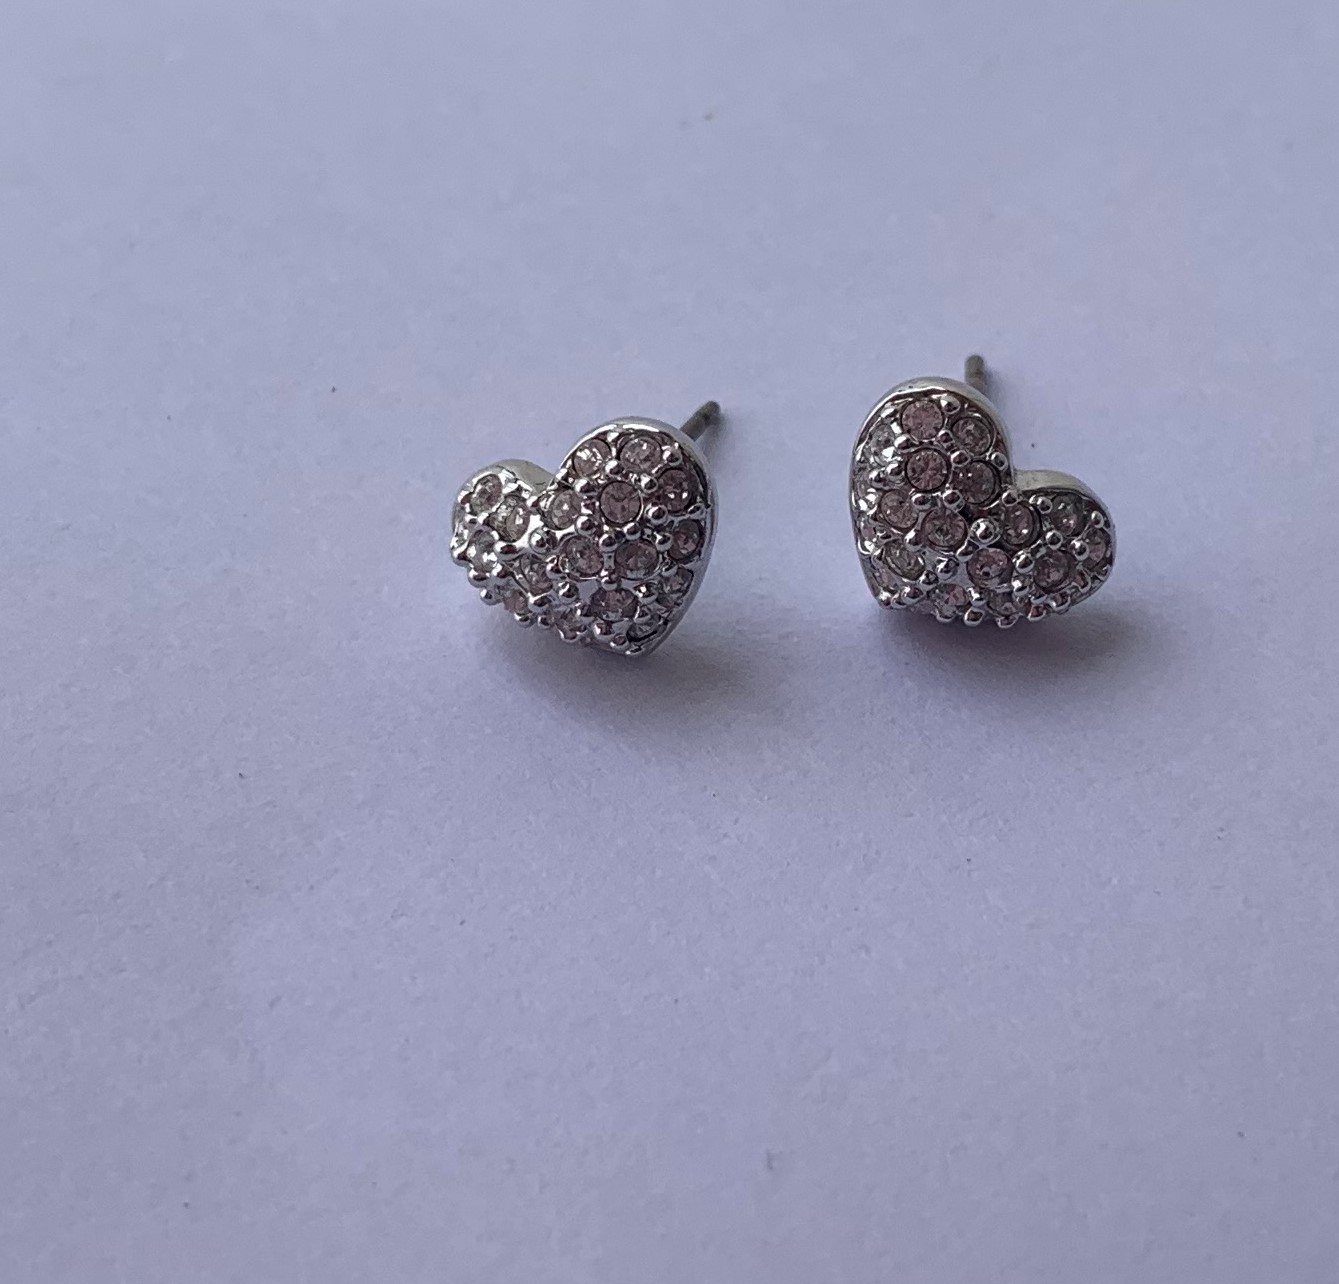 Earrings - Earrings - Swarovski Heart Stud Earrings With Swarovski ...